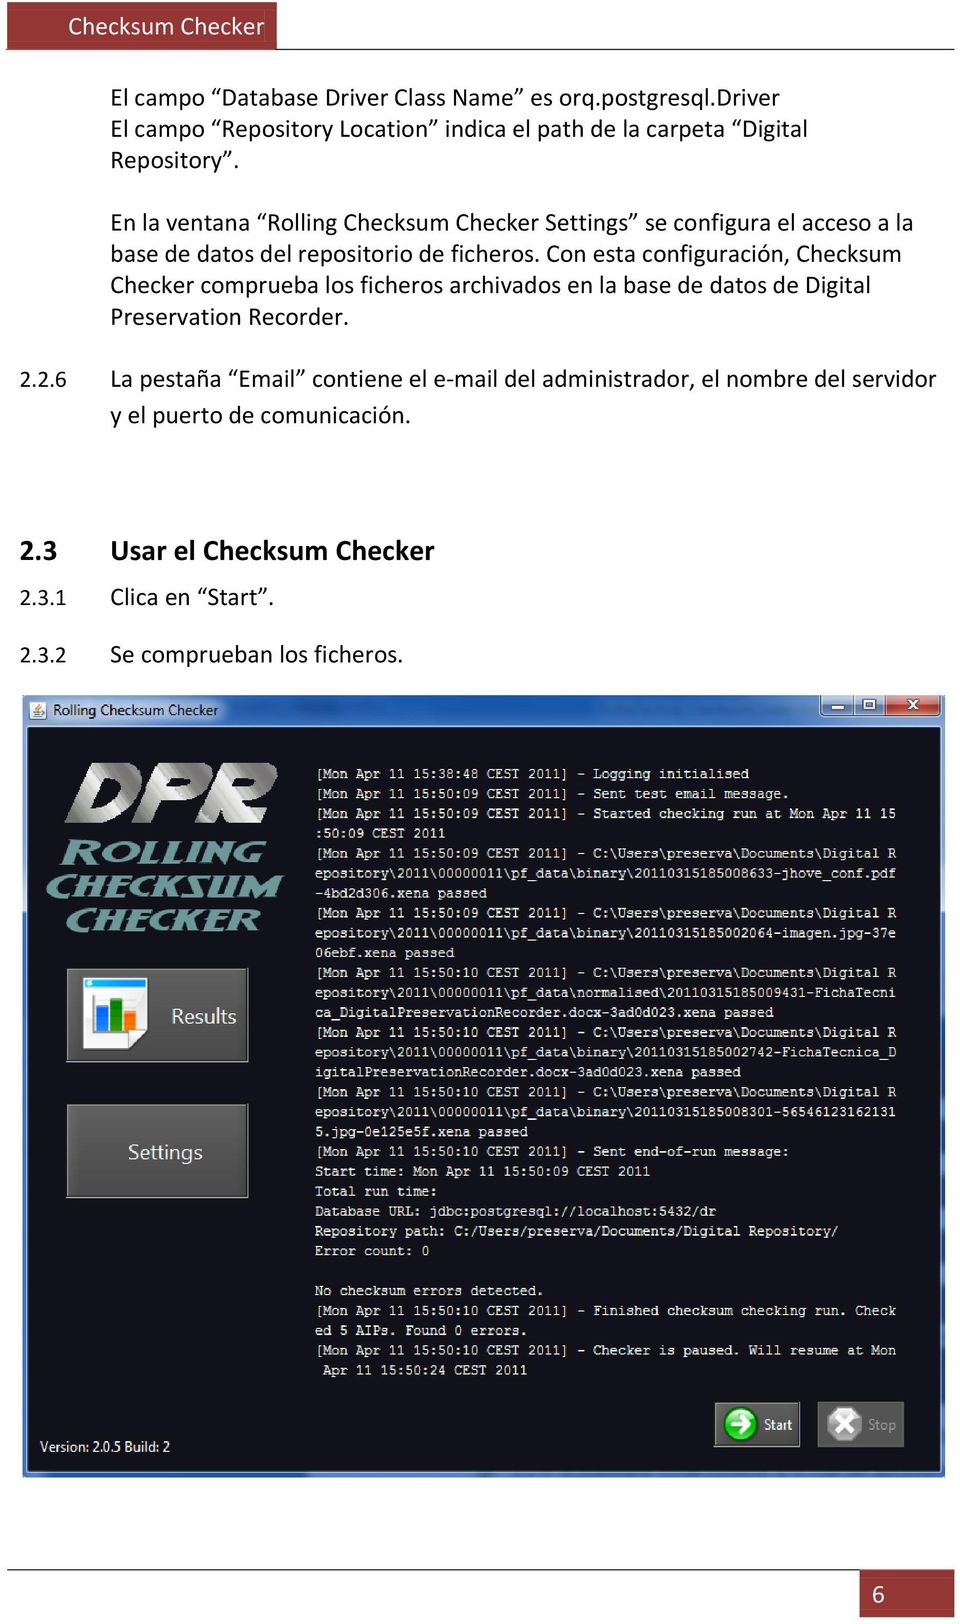 Con esta configuración, Checksum Checker comprueba los ficheros archivados en la base de datos de Digital Preservation Recorder. 2.